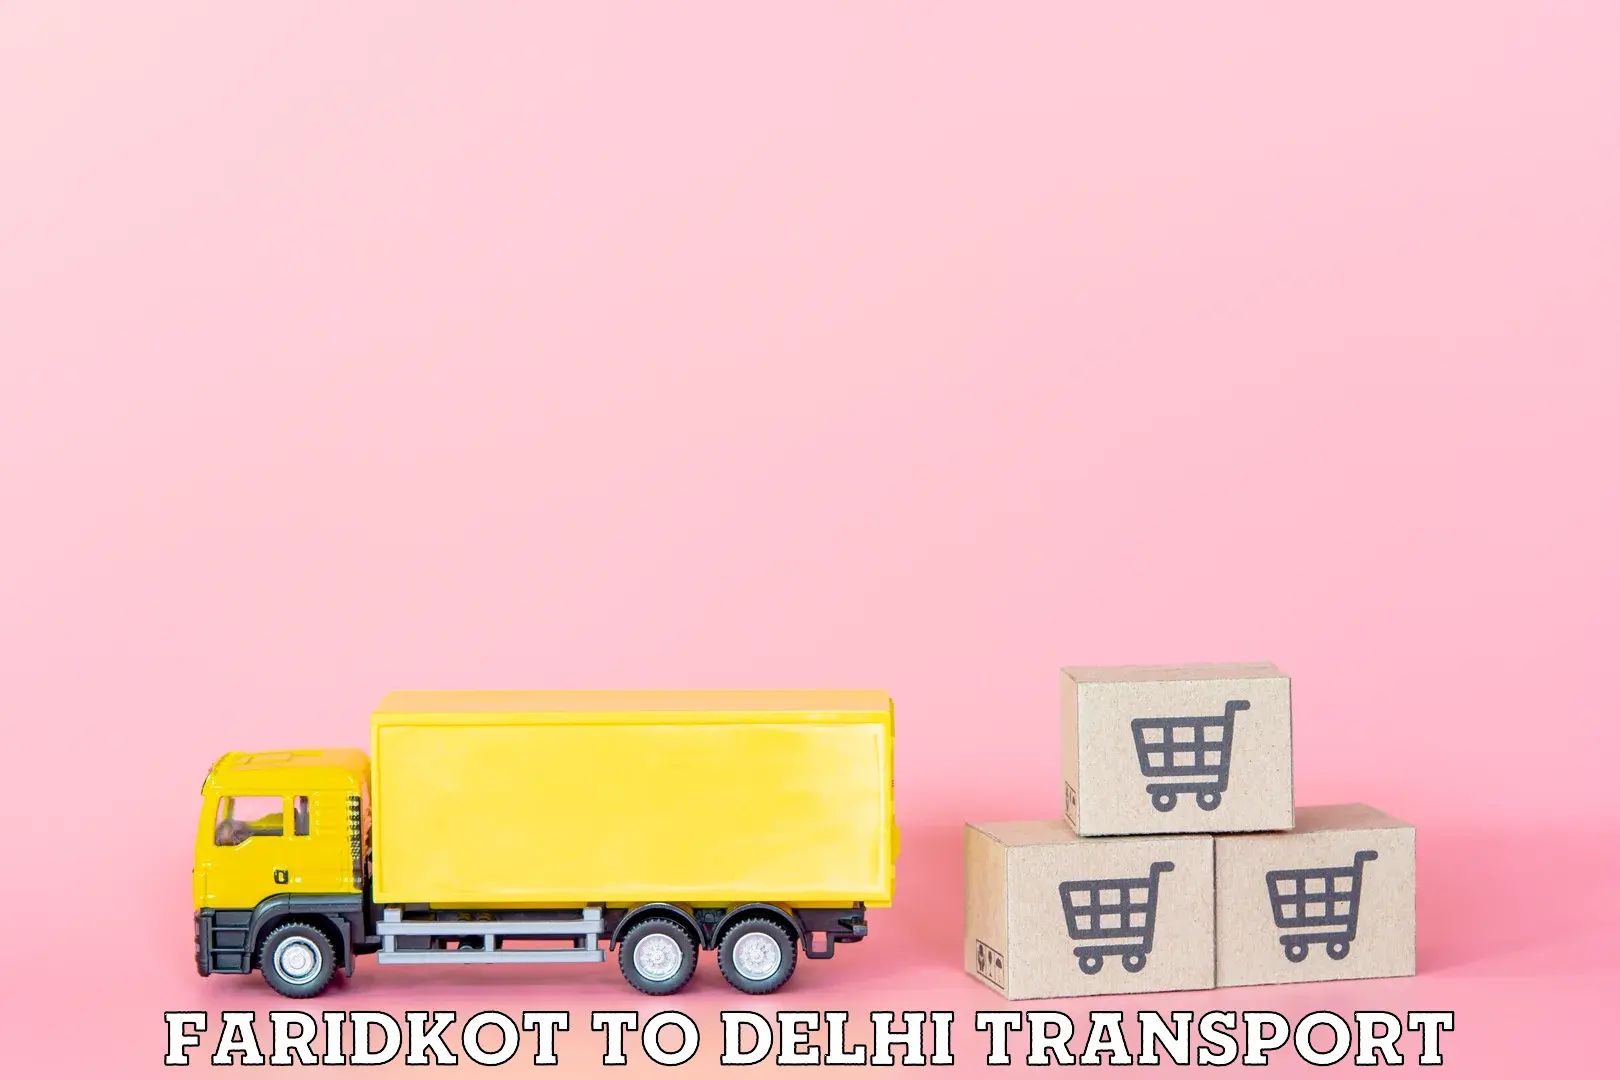 Daily transport service Faridkot to Jamia Millia Islamia New Delhi